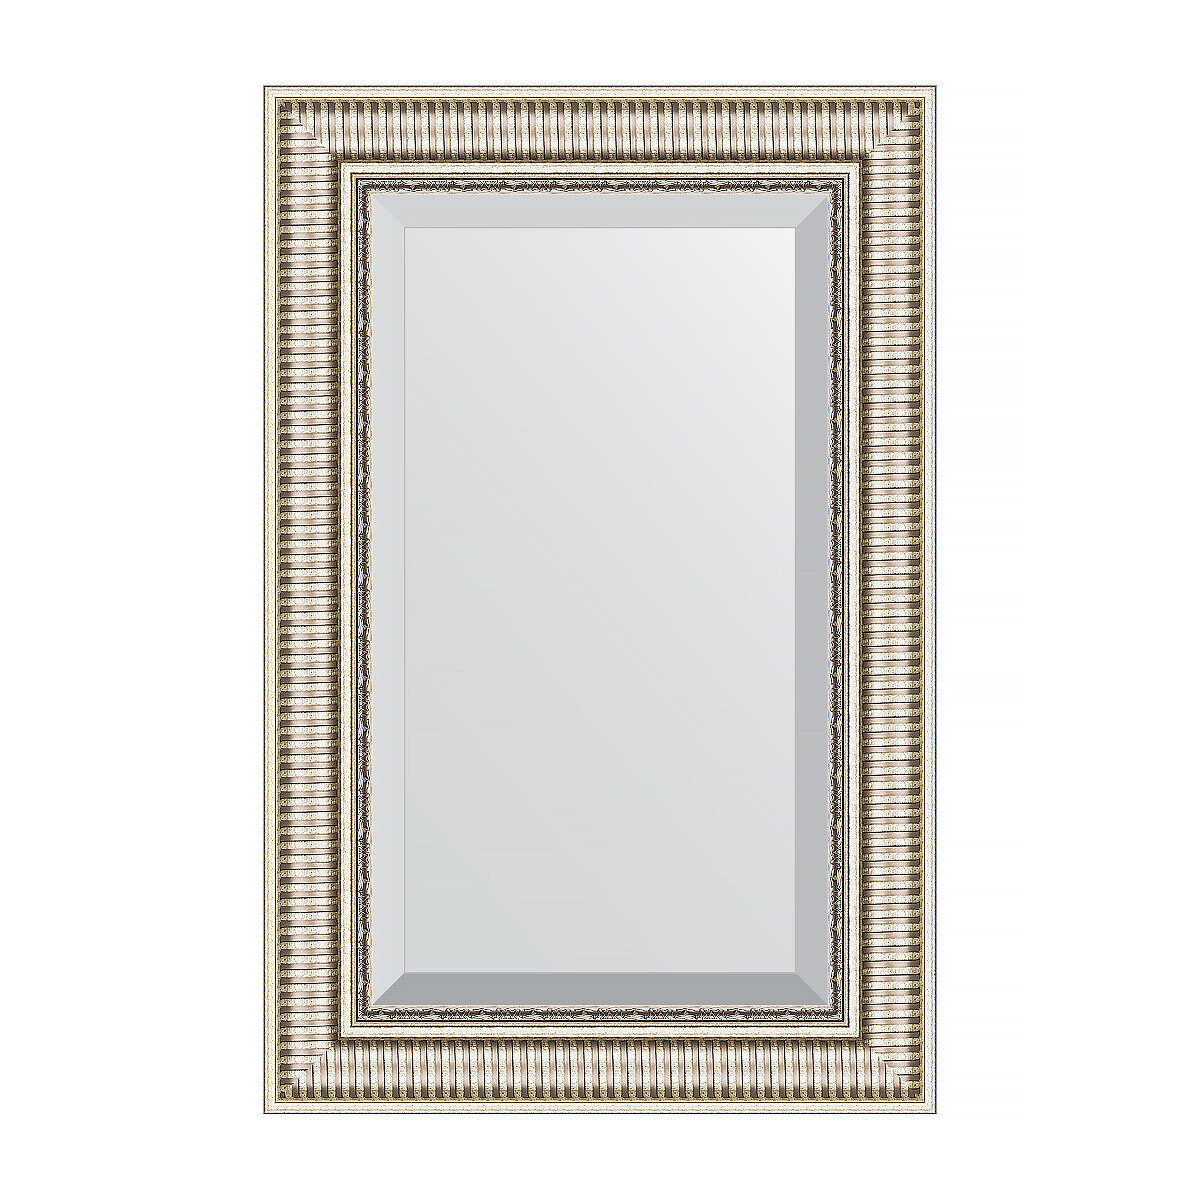 Зеркало настенное с фацетом EVOFORM в багетной раме серебряный акведук, 57х87 см, для гостиной, прихожей, кабинета, спальни и ванной комнаты, BY 1238